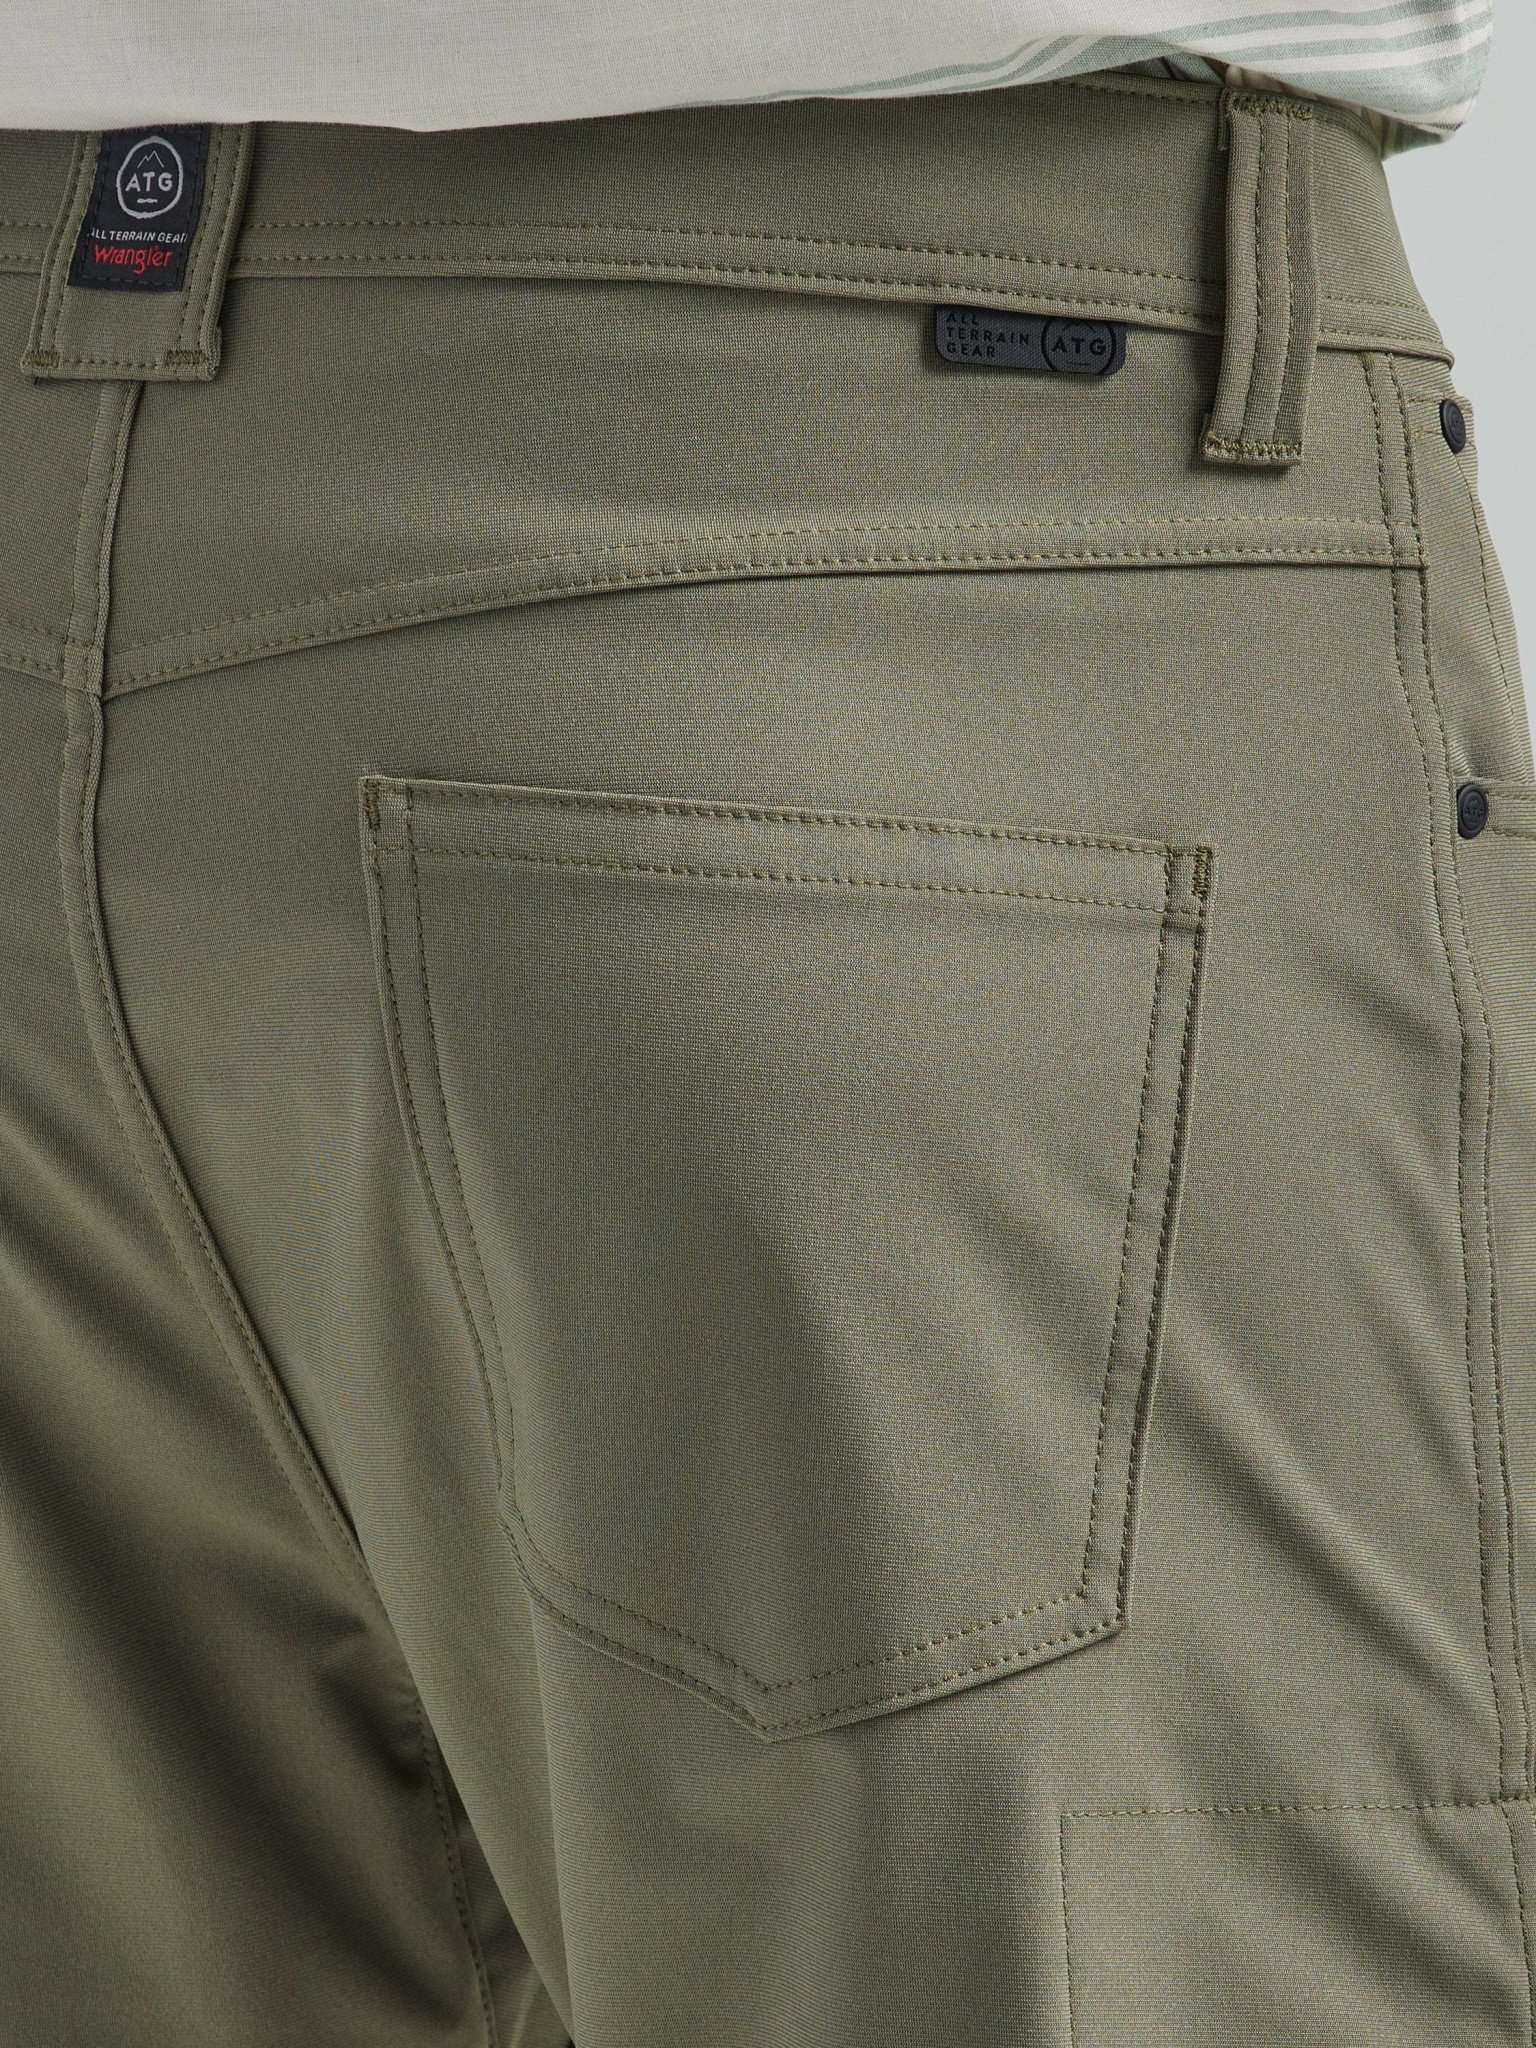 All Terrain Gear FWDS 5 Pocket Pants in Dusty Olive Hosen Wrangler   